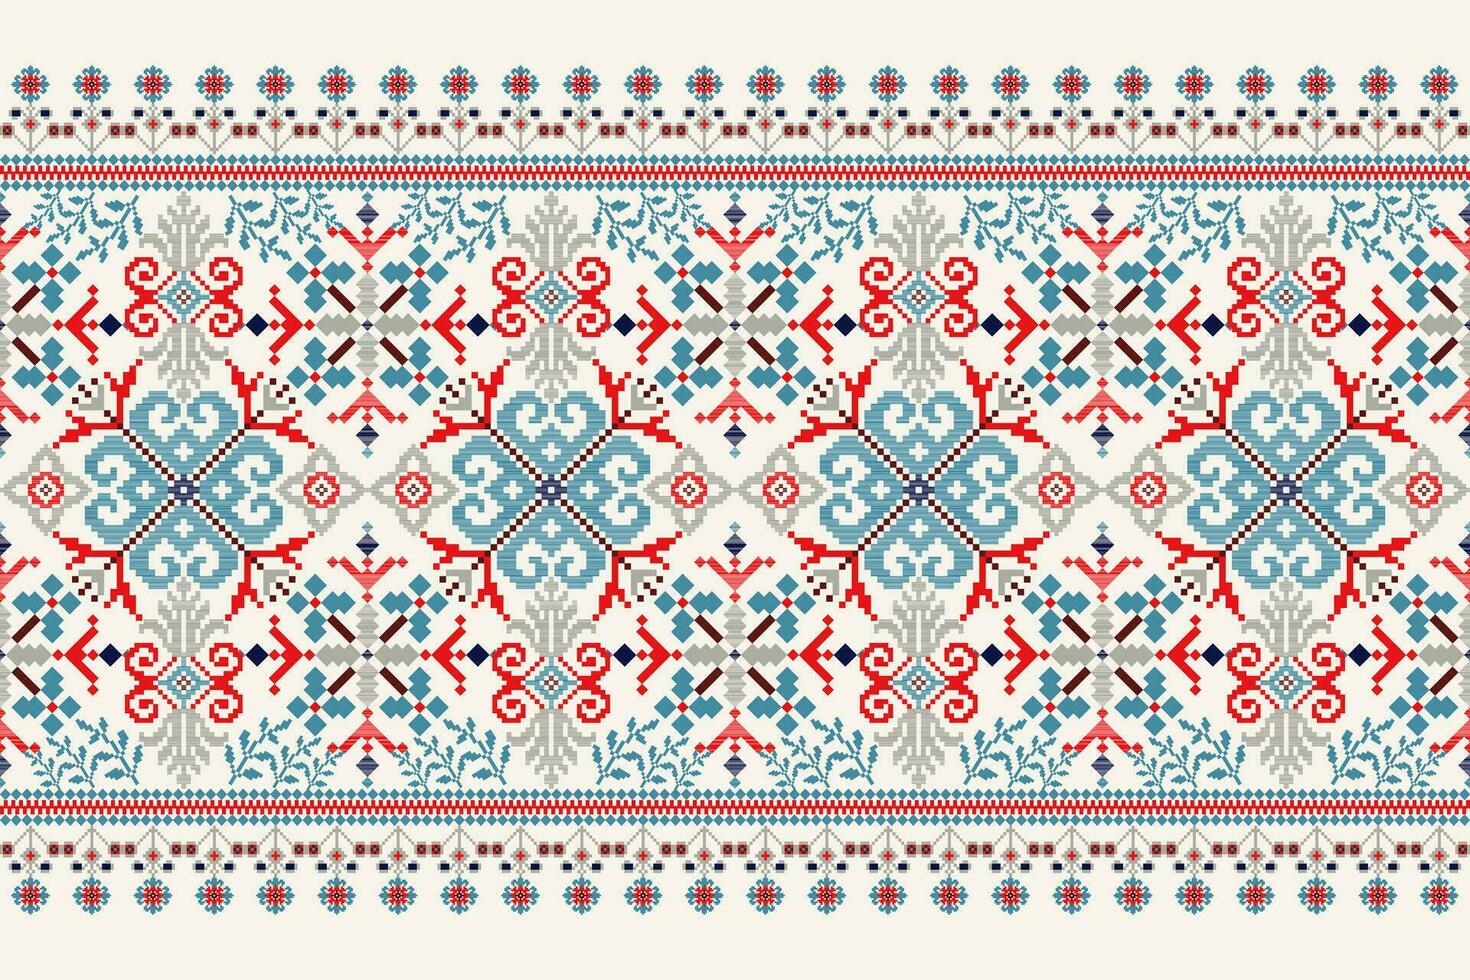 floreale attraversare punto ricamo su bianca sfondo.geometrico etnico orientale modello tradizionale.azteco stile astratto vettore illustrazione.disegno per trama, tessuto, abbigliamento, avvolgimento, decorazione, sciarpa.